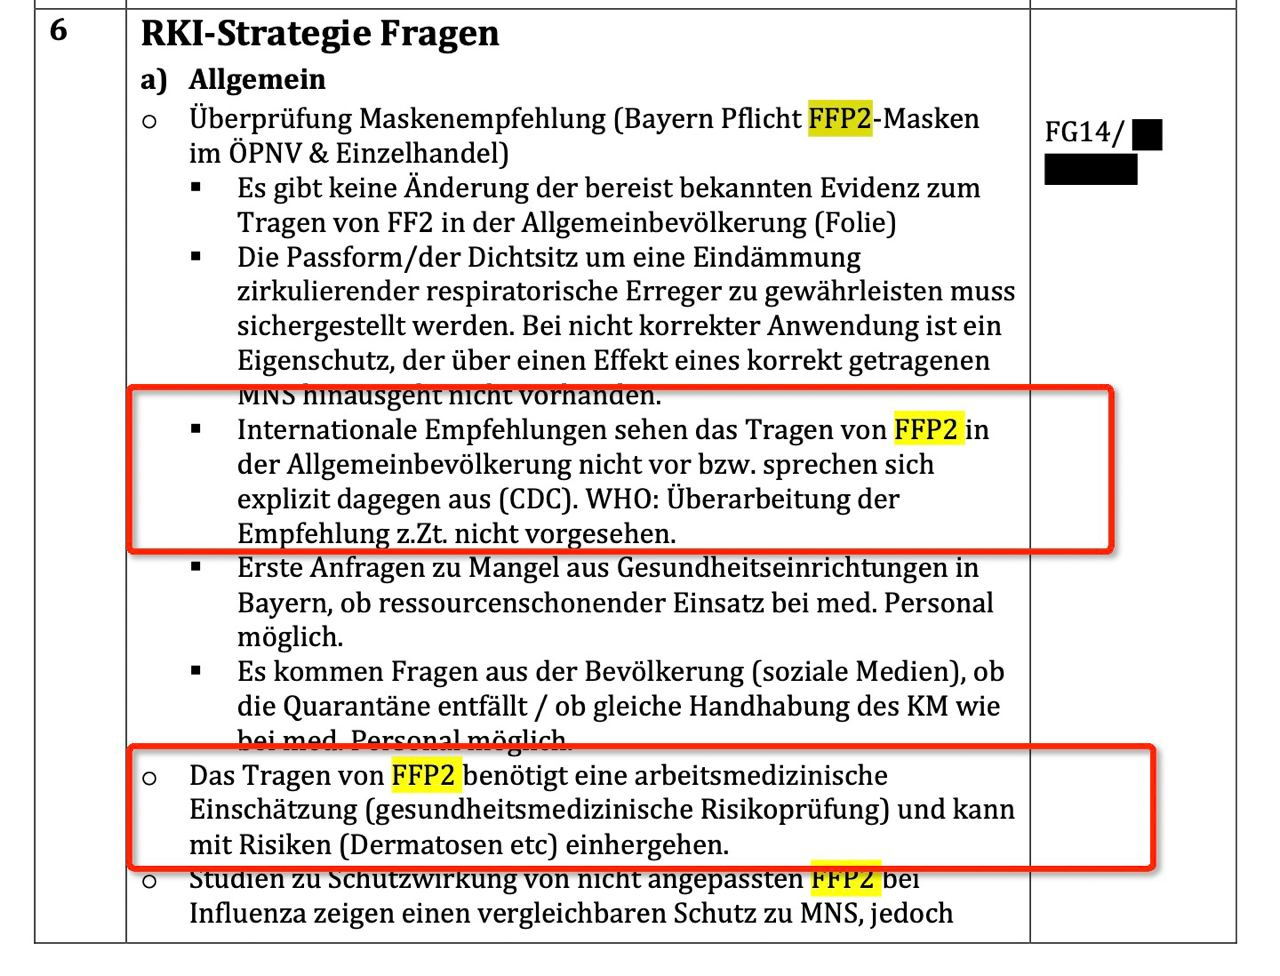 Další alarmující zjištění z protokolů německé RKI: Už v lednu 2020 se vědělo, že roušky poškozují zdraví